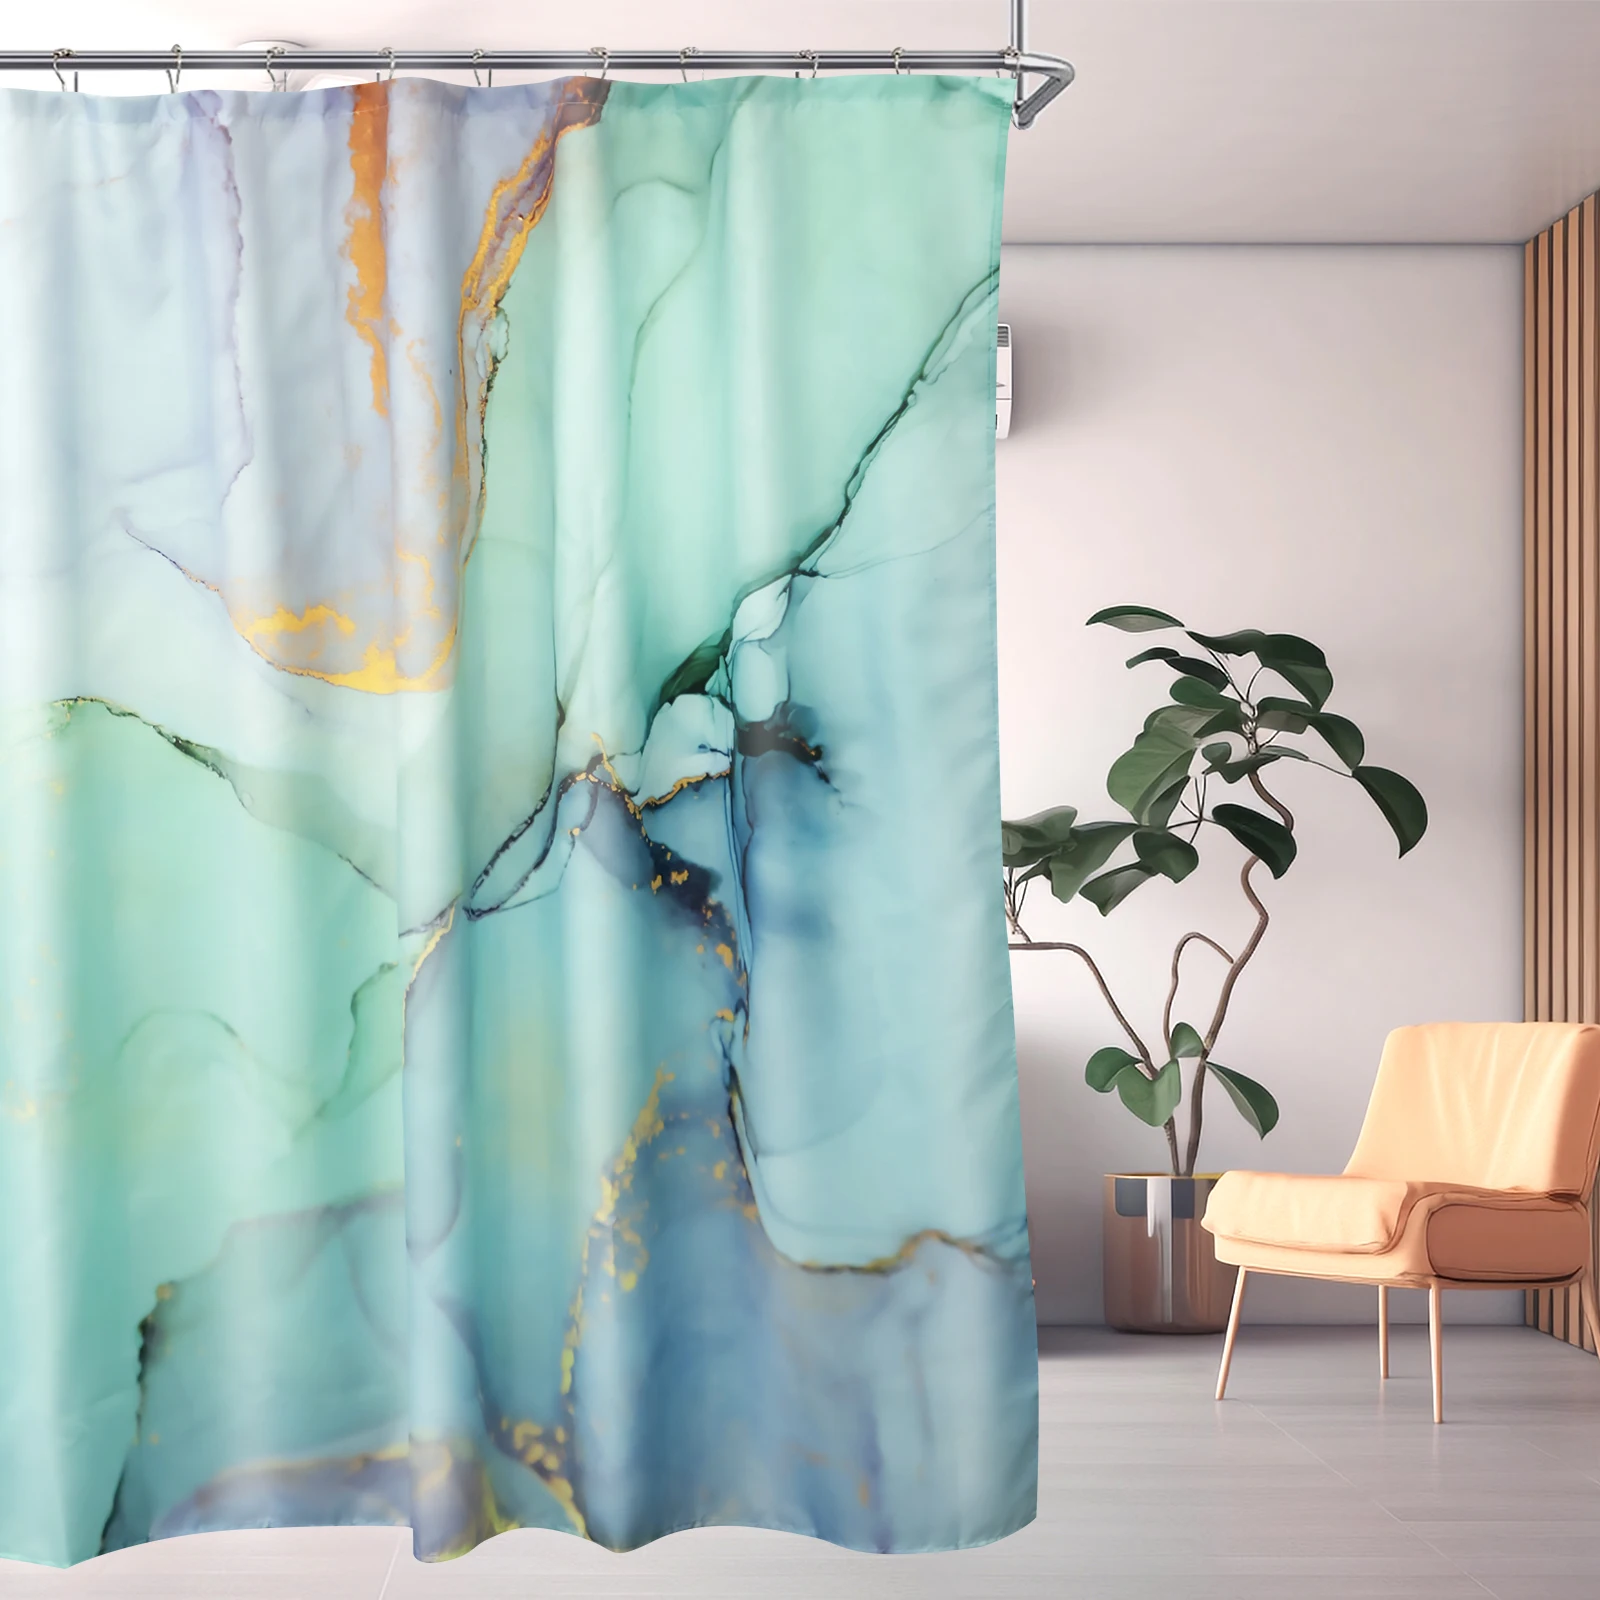 

Занавеска для душа, водонепроницаемая шторка для ванной комнаты размером 71x71 дюйма, занавеска для быстрой душа с мраморным рисунком